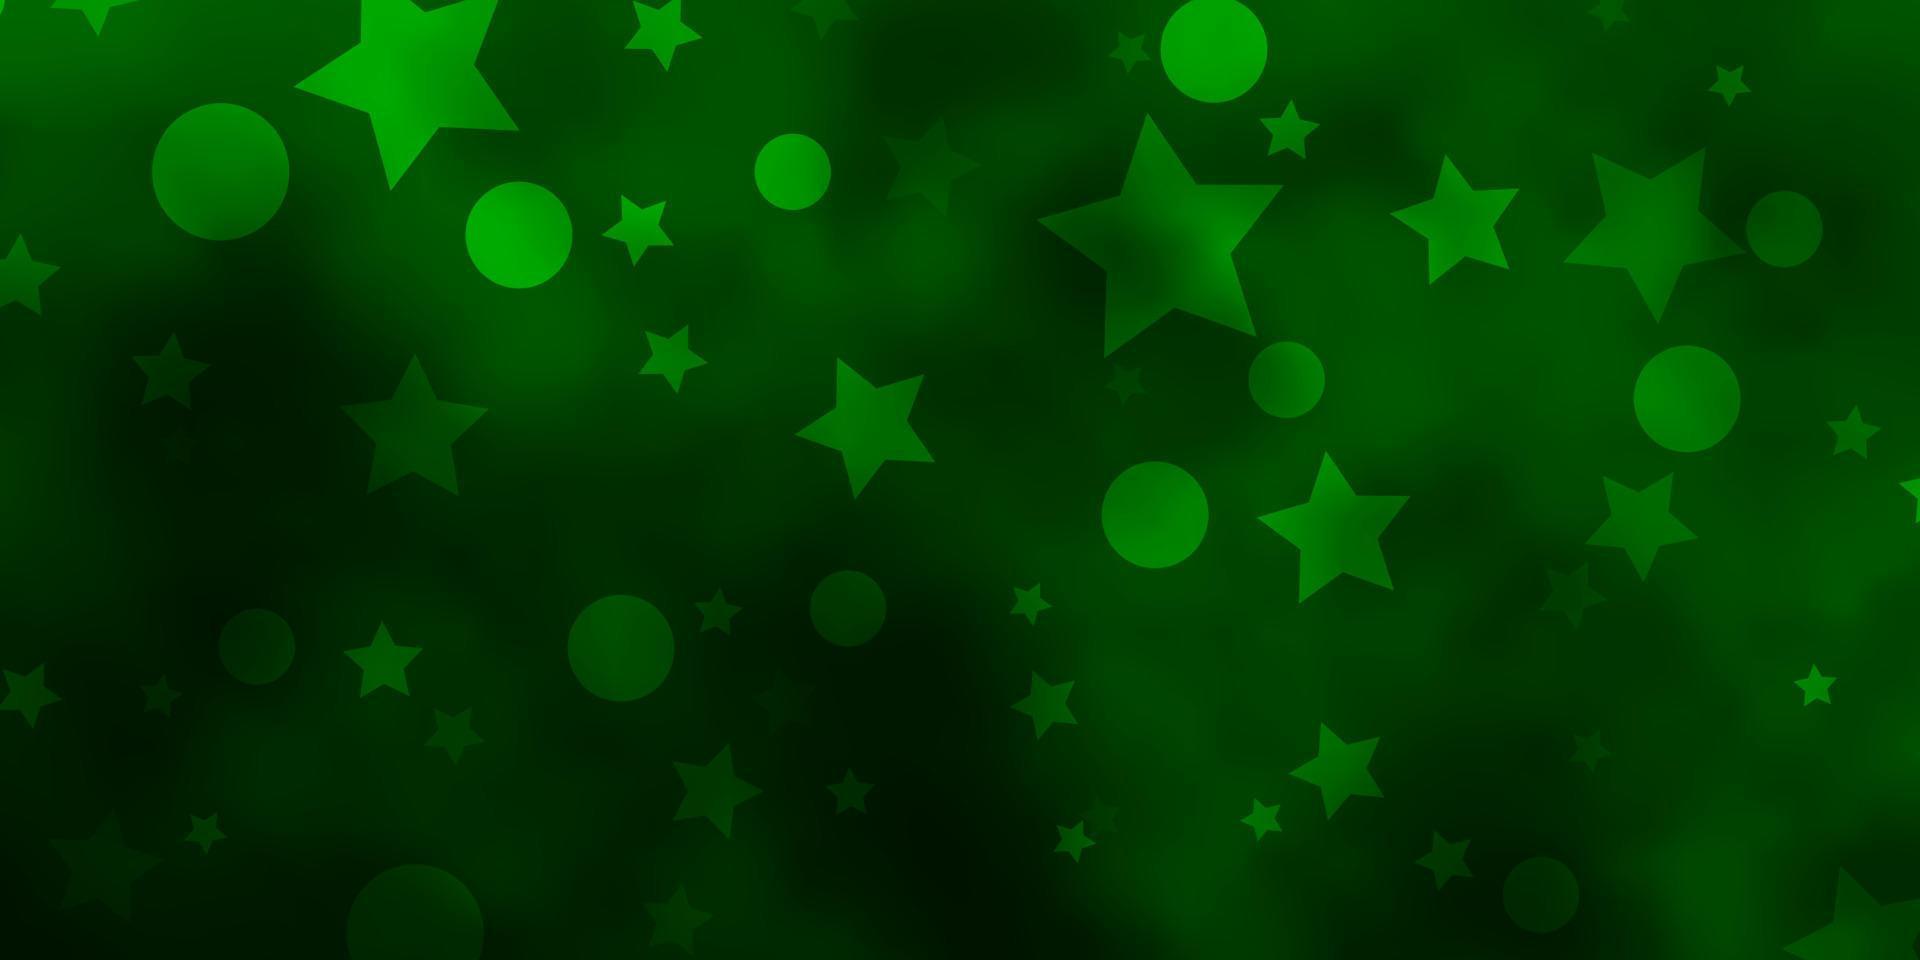 Fondo de vector verde claro con círculos, estrellas.